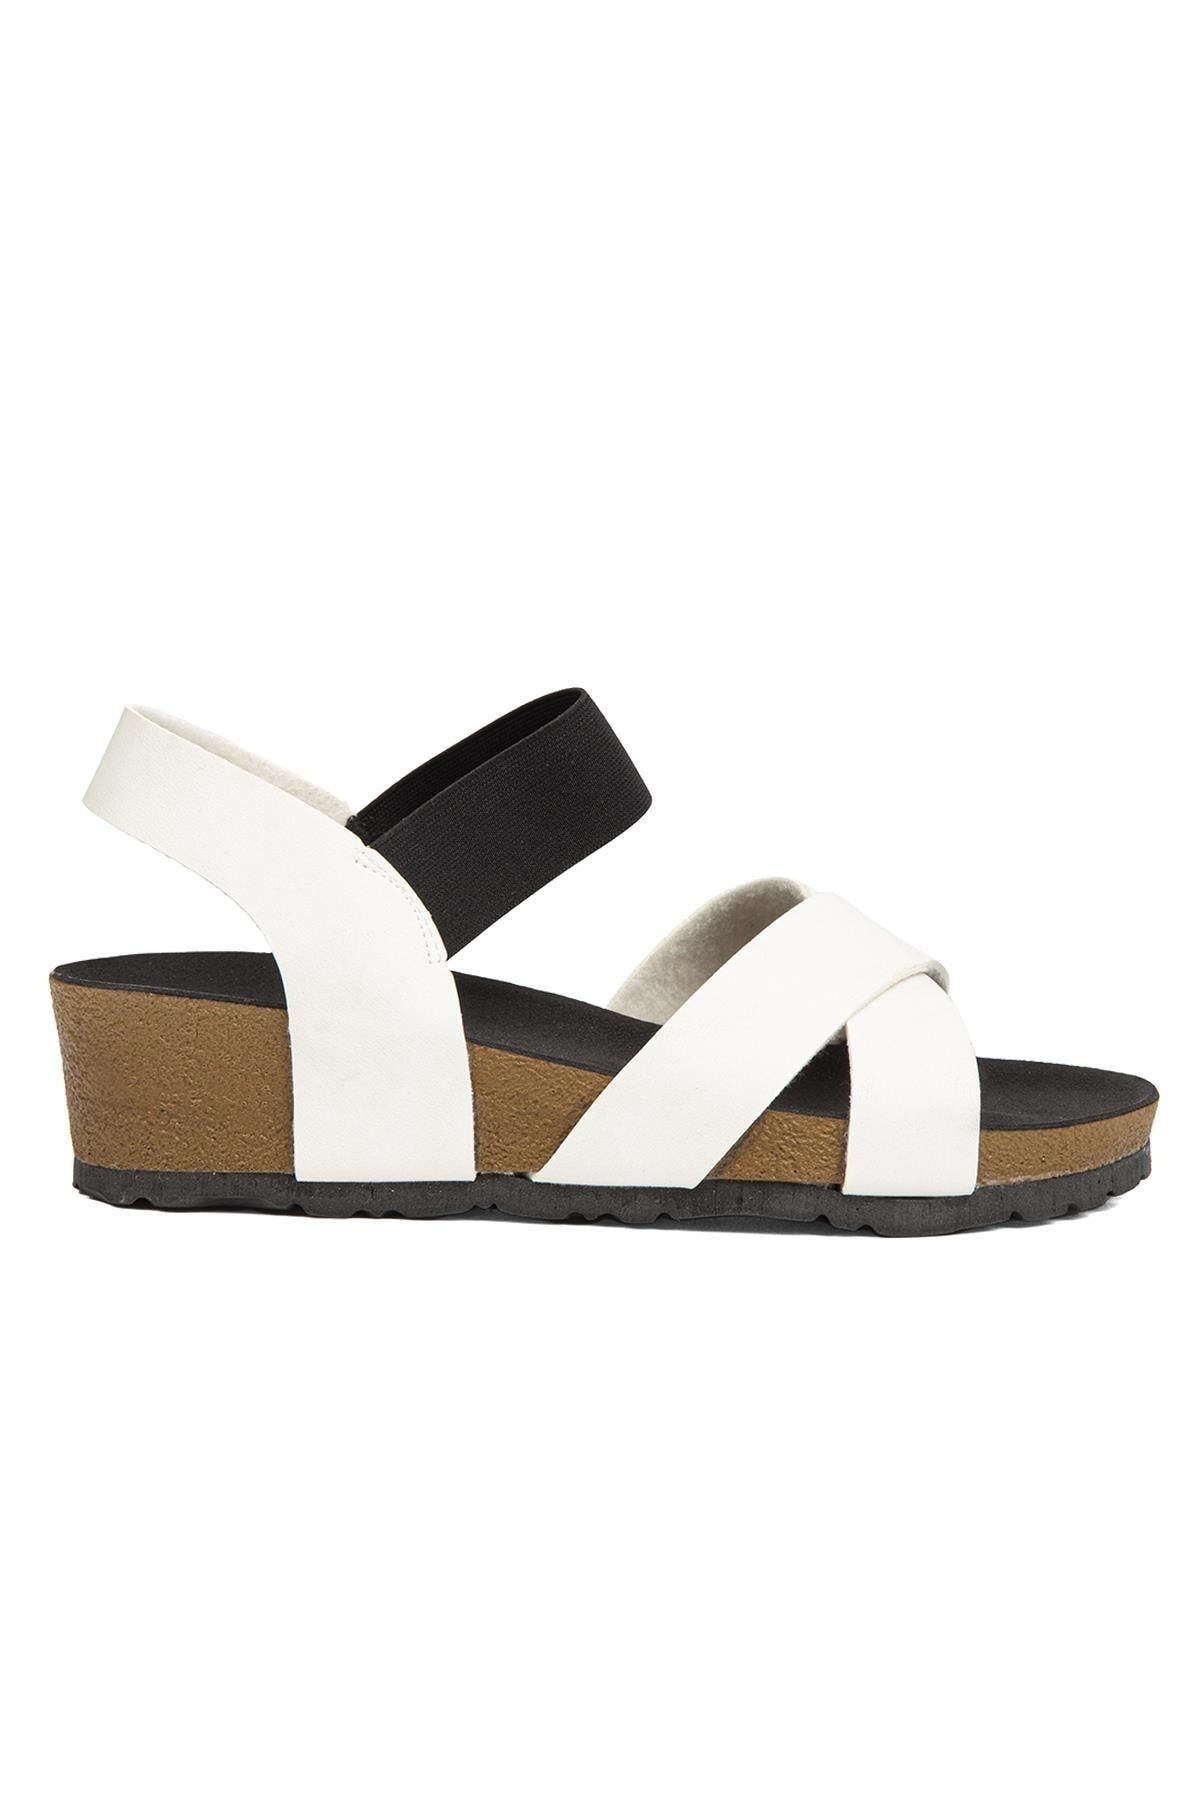 Pierre Cardin ® | Pc-6956-beyaz - Kadın Sandalet